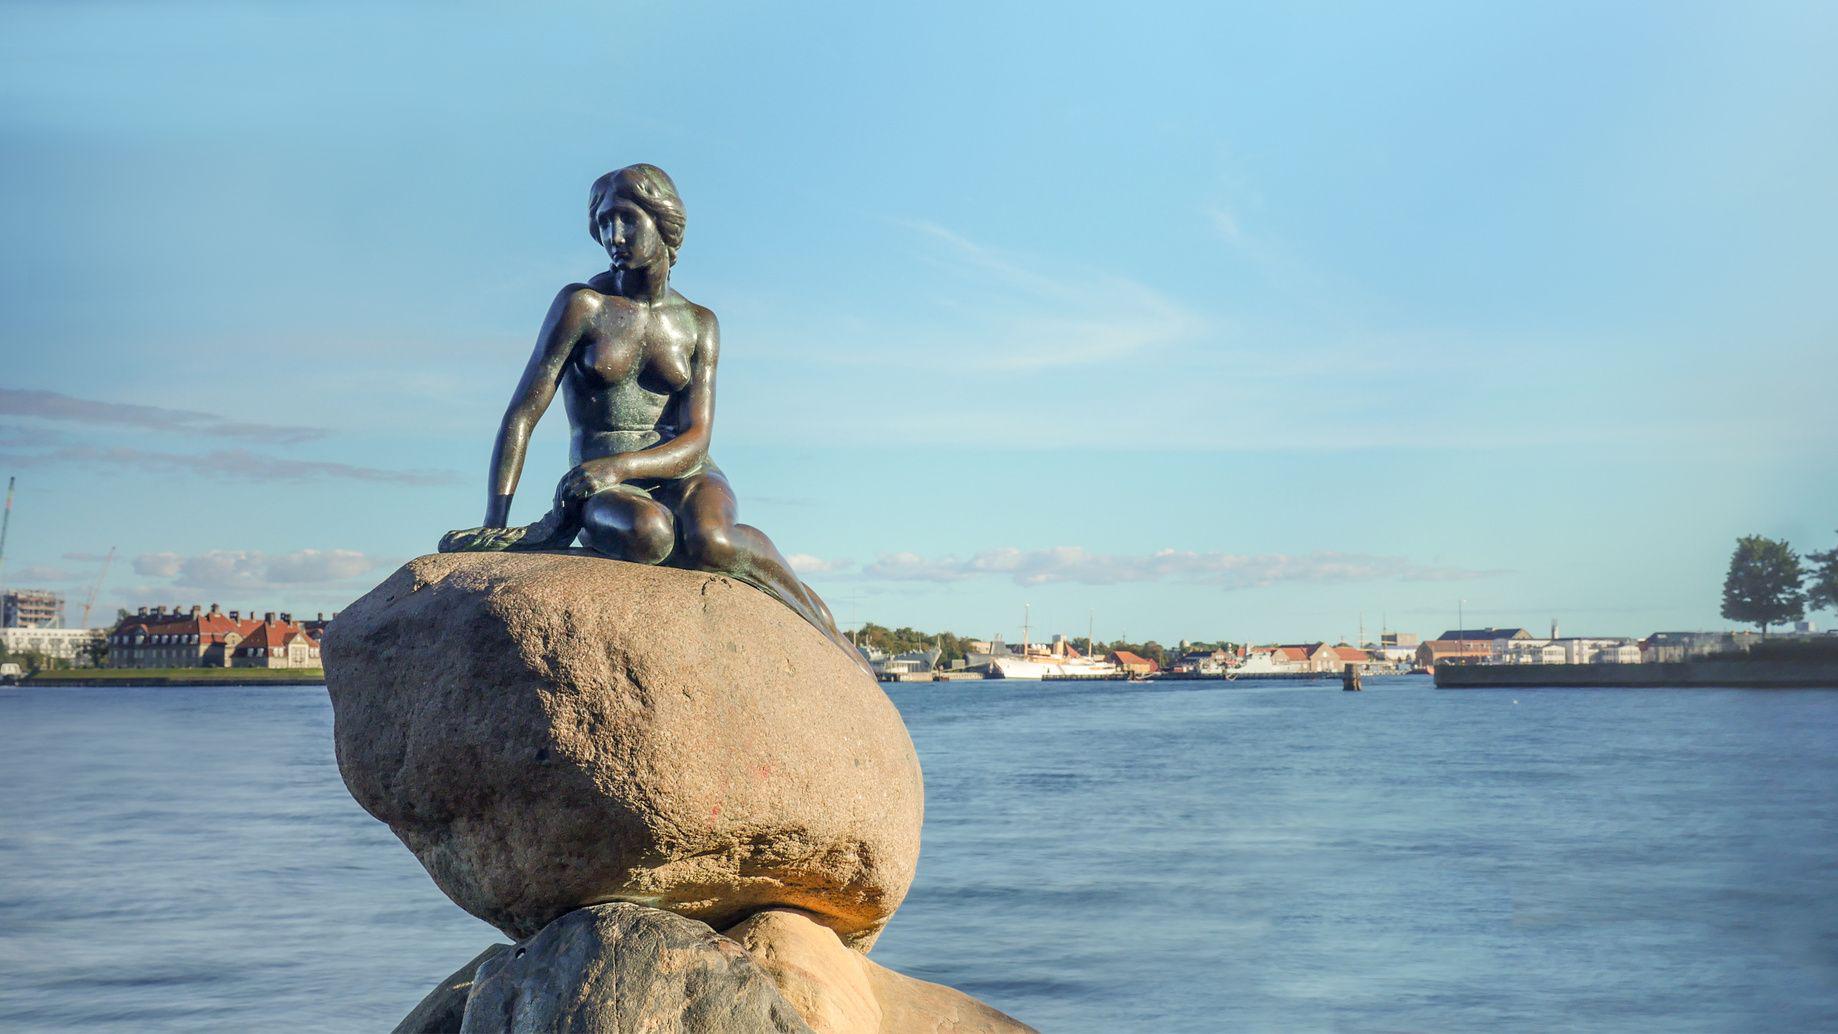 La Sirenetta - è probabilmente il simbolo della città. Una scultura di bronzo alta 1,25 m e dal peso di 175 kg, situata all'ingresso del porto di Copenaghen. Raffigura la protagonista della celebre fiaba di Hans Christian Andersen. danr13 - Fotolia